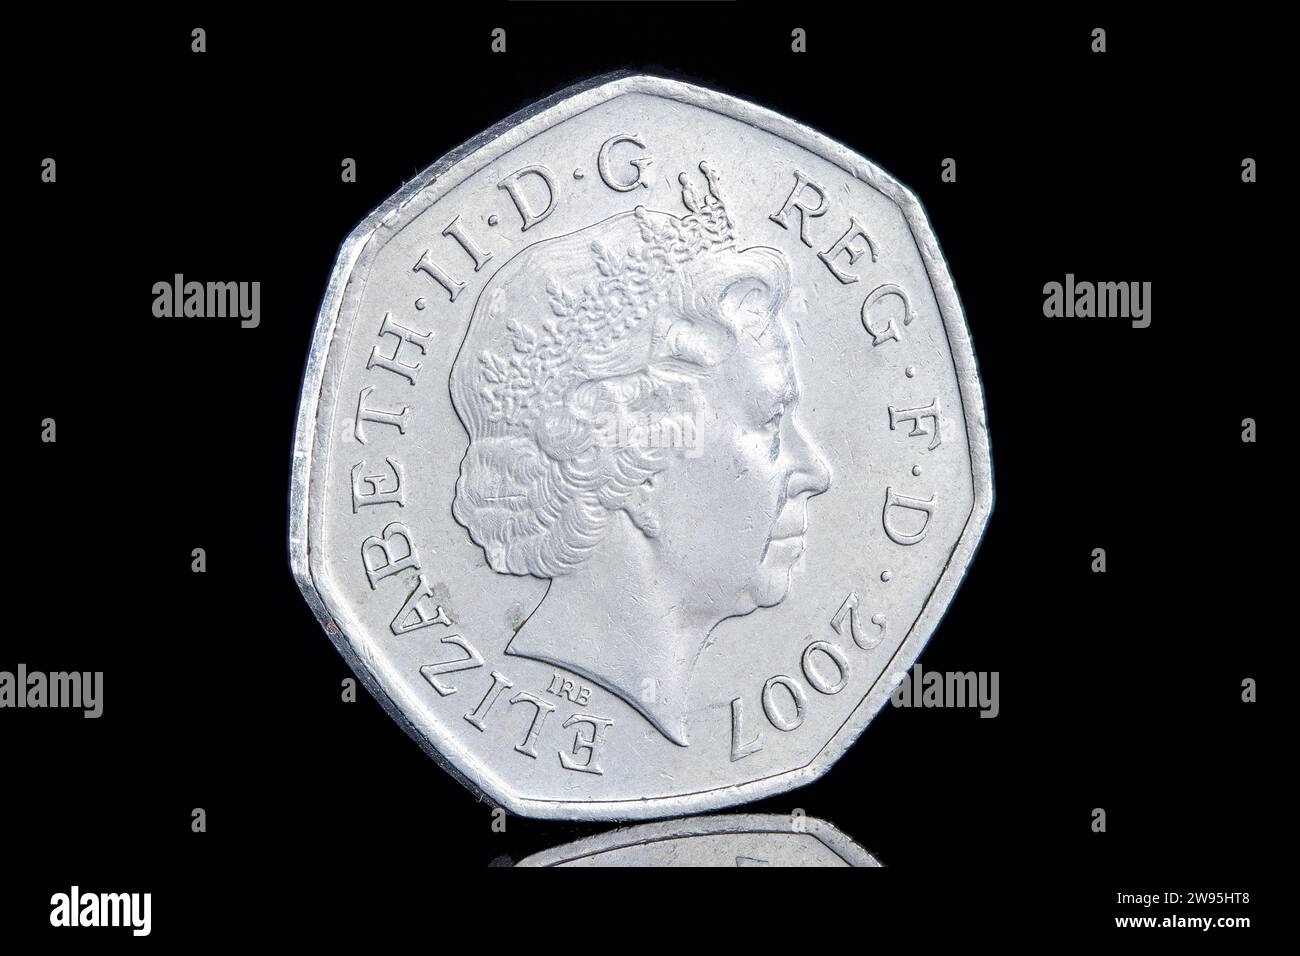 Un 2007 50p per commemorare i 100 anni del movimento scout. Il dritto presenta il quarto ritratto della regina Elisabetta II di Ian Rank Broadley Foto Stock